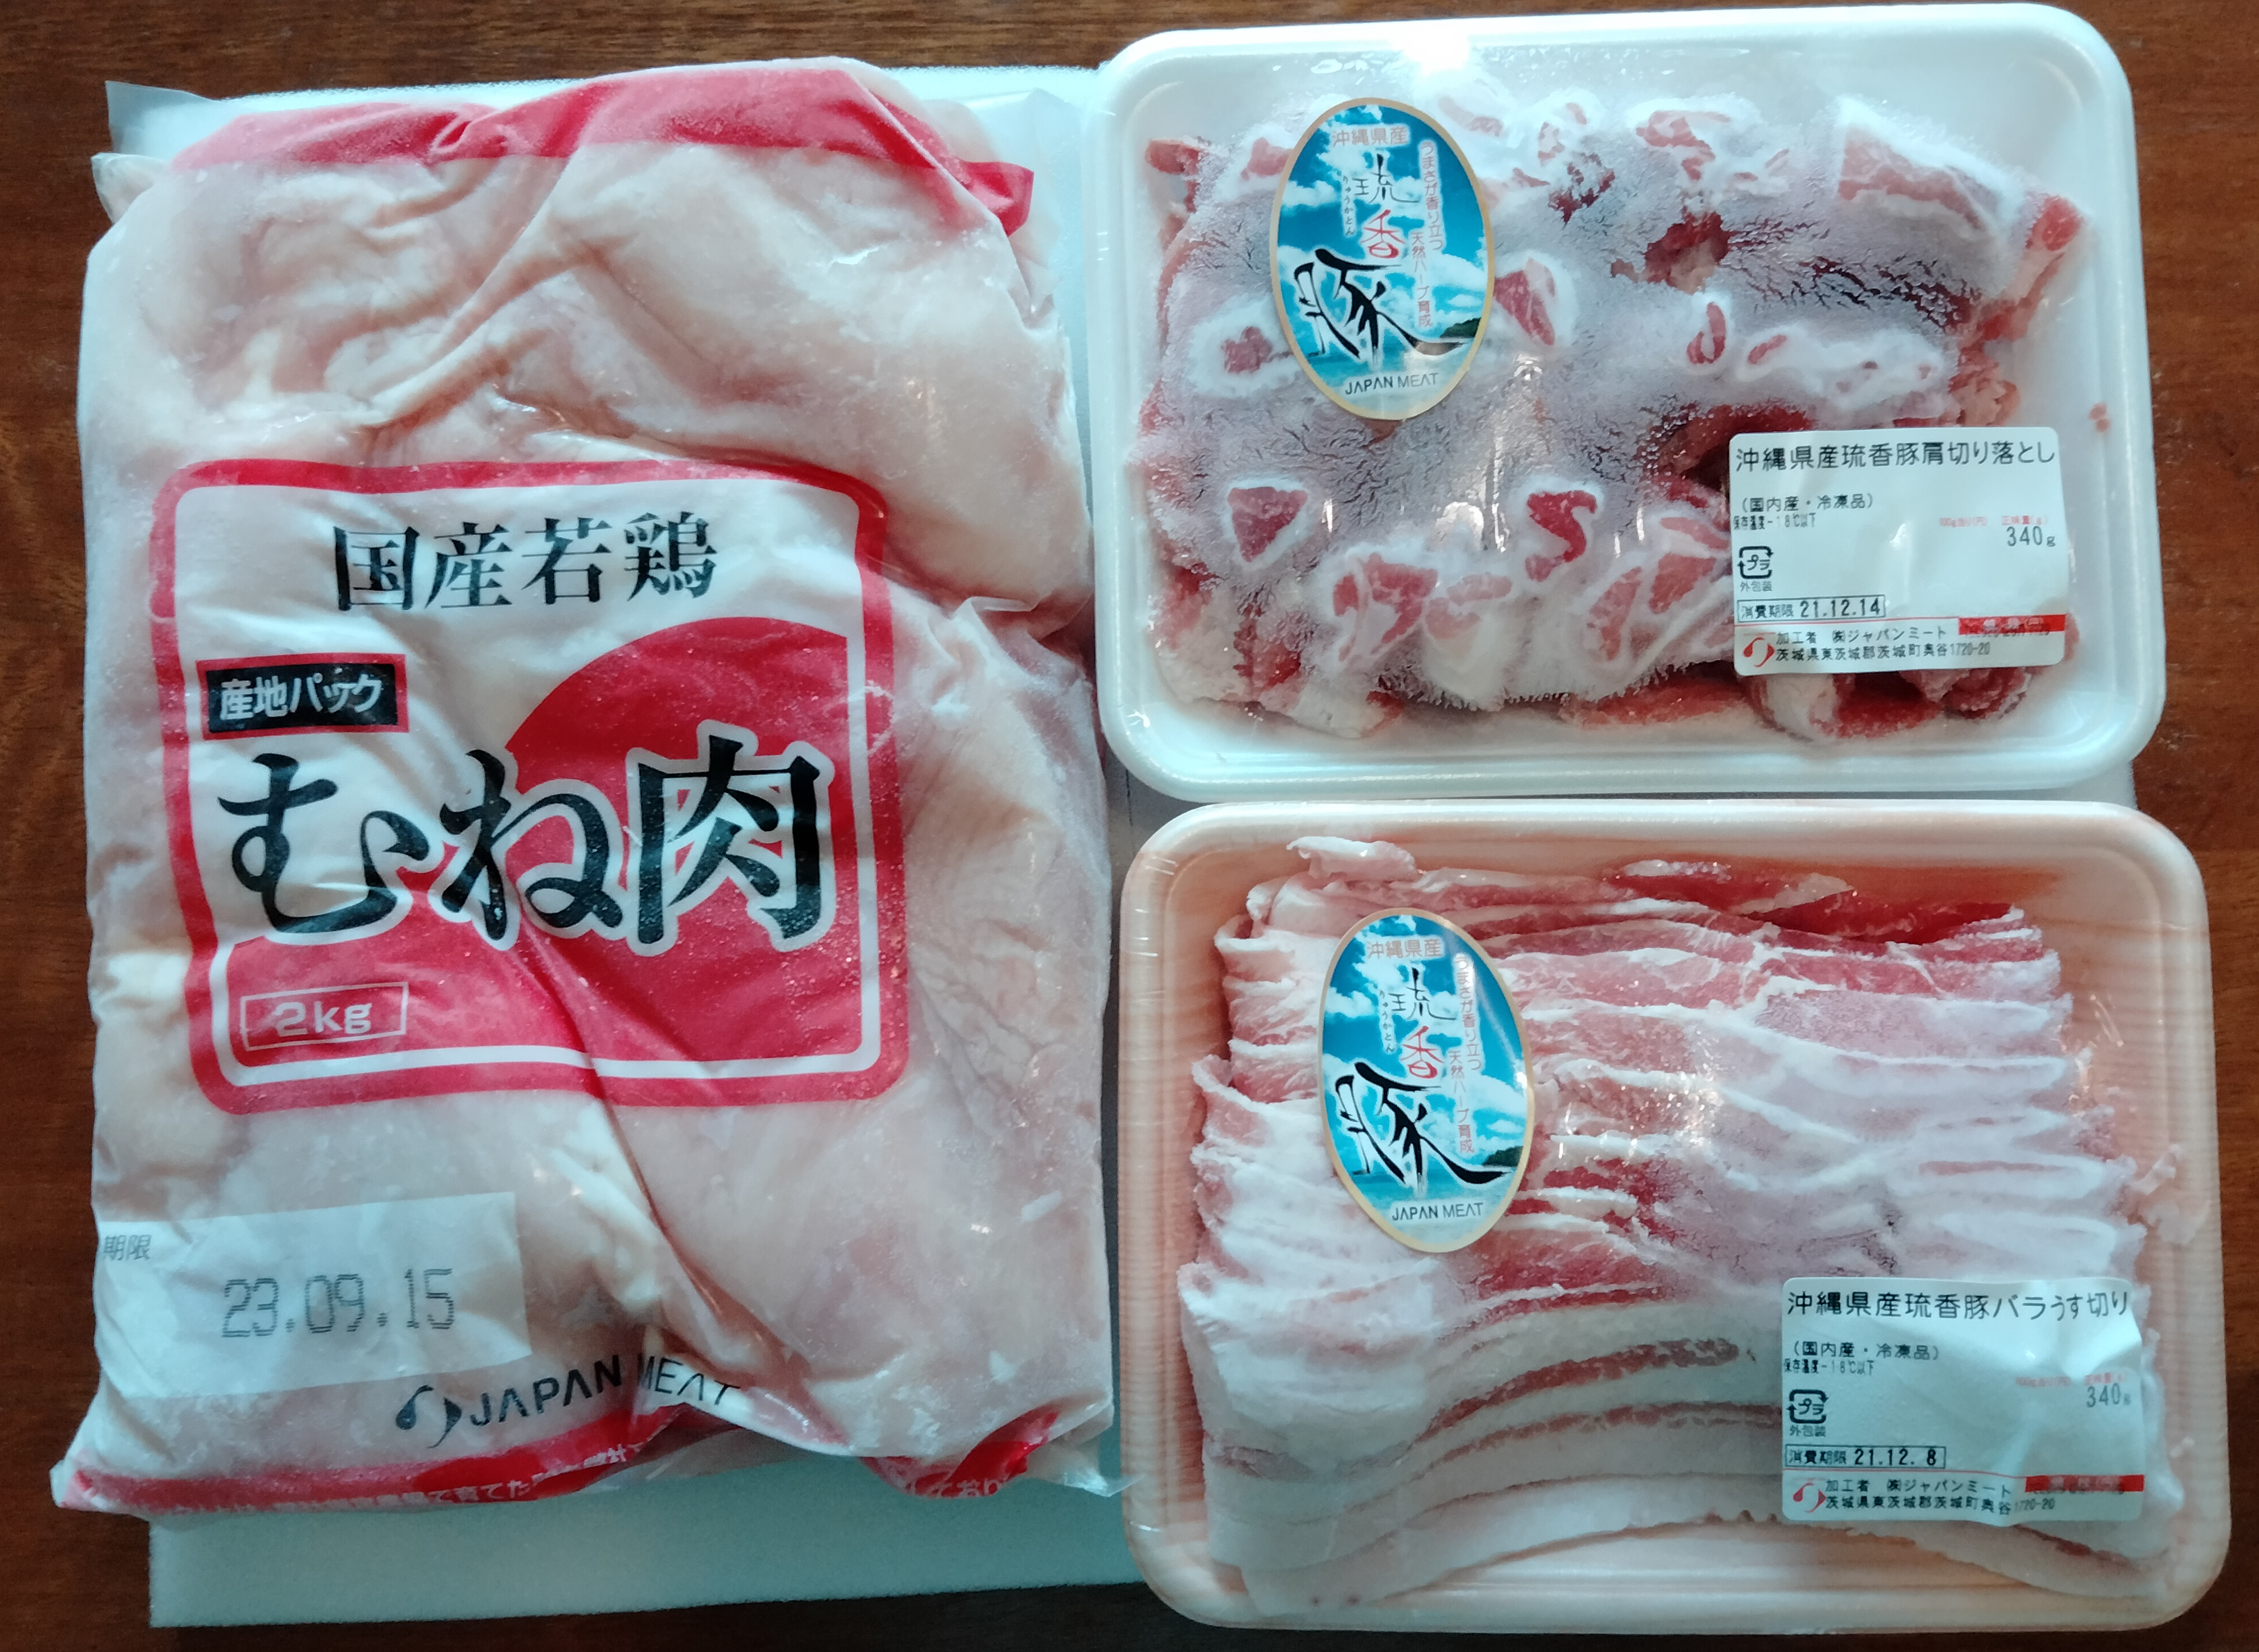 【7月優待】JMホールディングスから株主優待品(お肉)が届きました